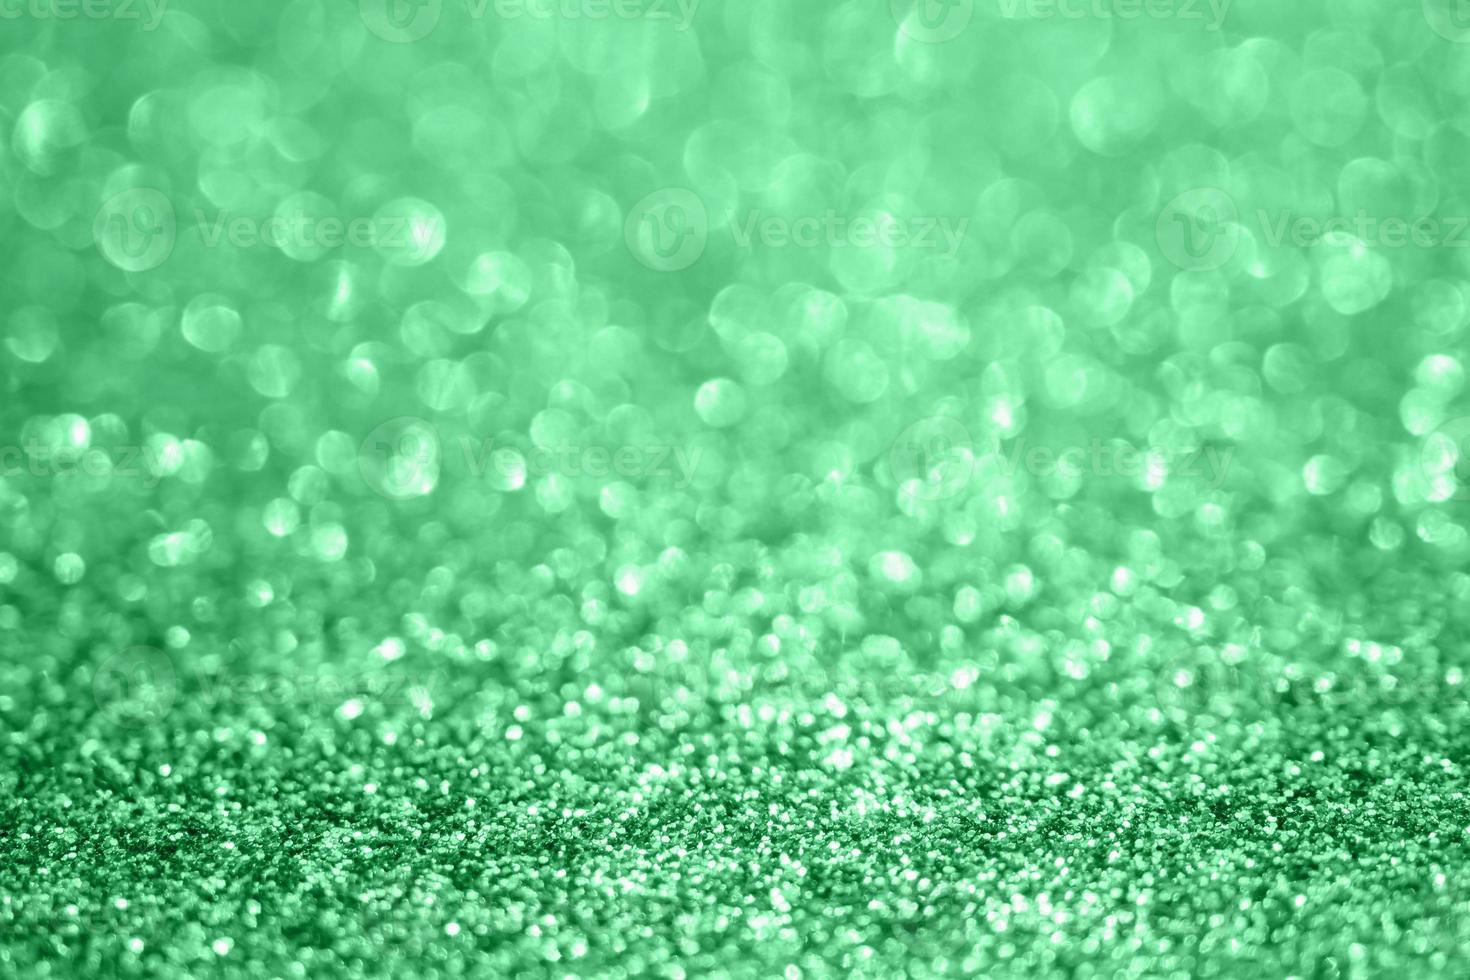 desfoque abstrato brilho verde brilho desfocado bokeh luz de fundo foto